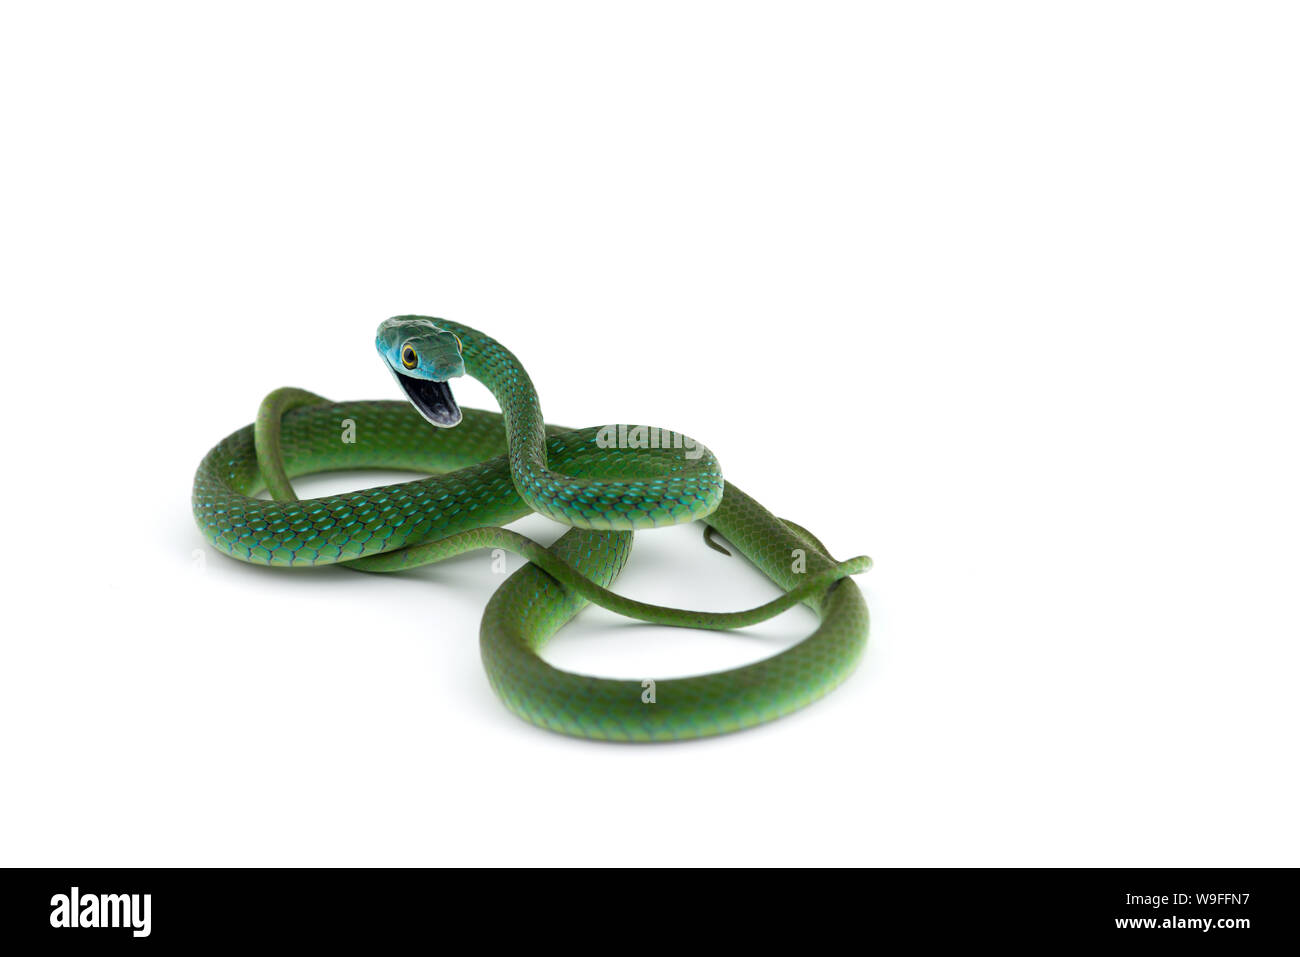 Northern macchia verde serpente isolato su sfondo bianco Foto Stock